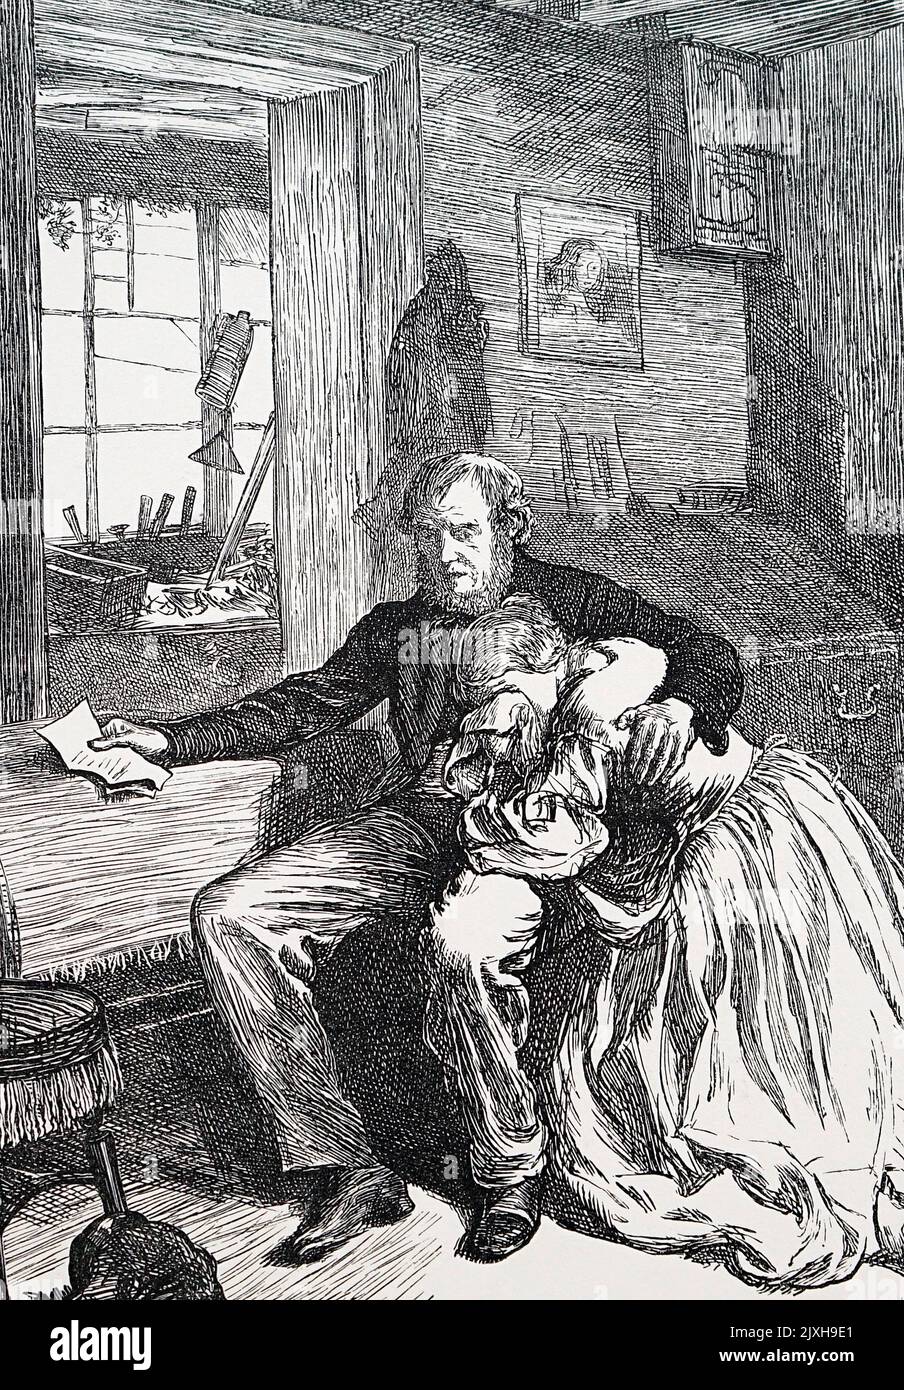 Illustration représentant un mari et une femme qui pleurent après avoir reçu des nouvelles sur la perte de leur enfant. Daté du 19th siècle Banque D'Images